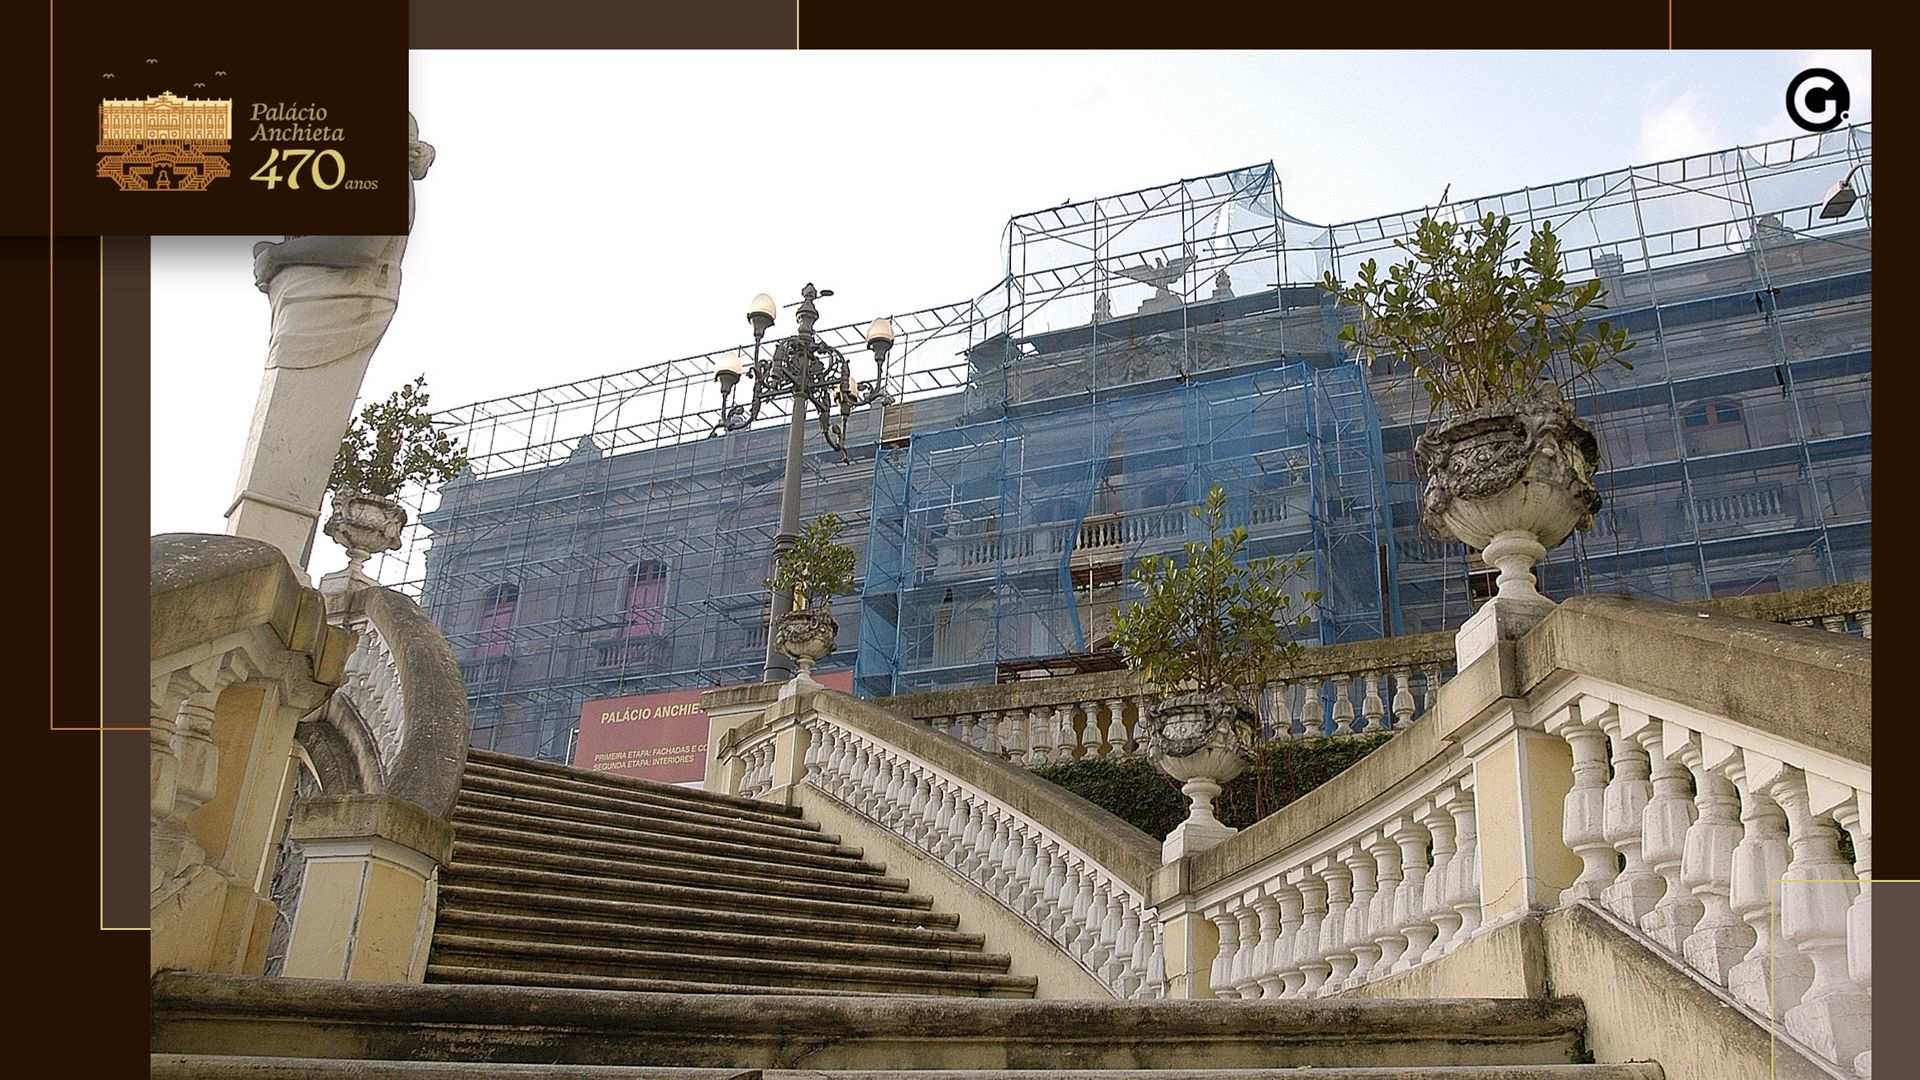 Restauração da parte externa do Palácio Anchieta teve início em 2004